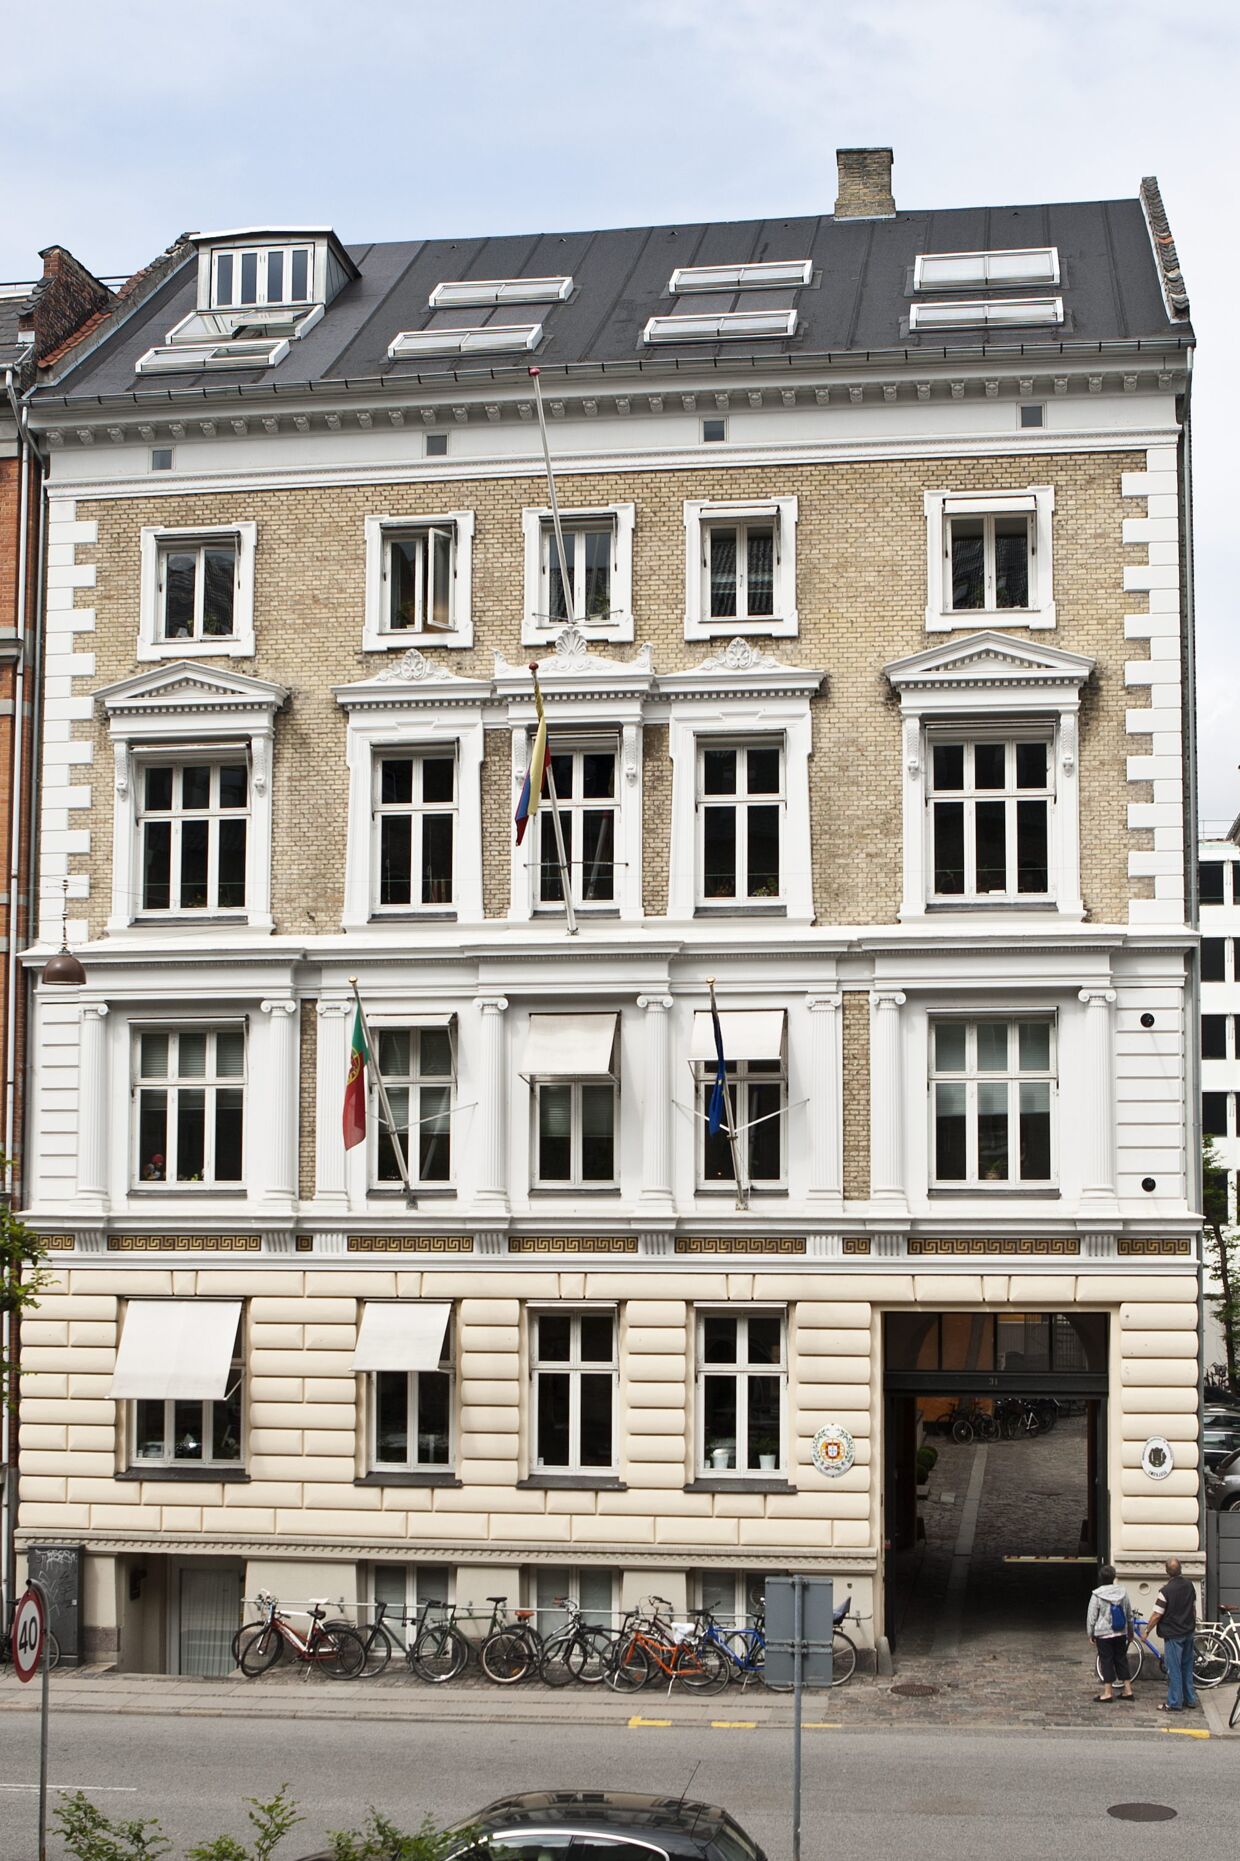 Ejendommen Toldbodgade 31 ligger få ejendomme fra dronning Margrethe og kronprins Frederiks hjem på Amalienborg.